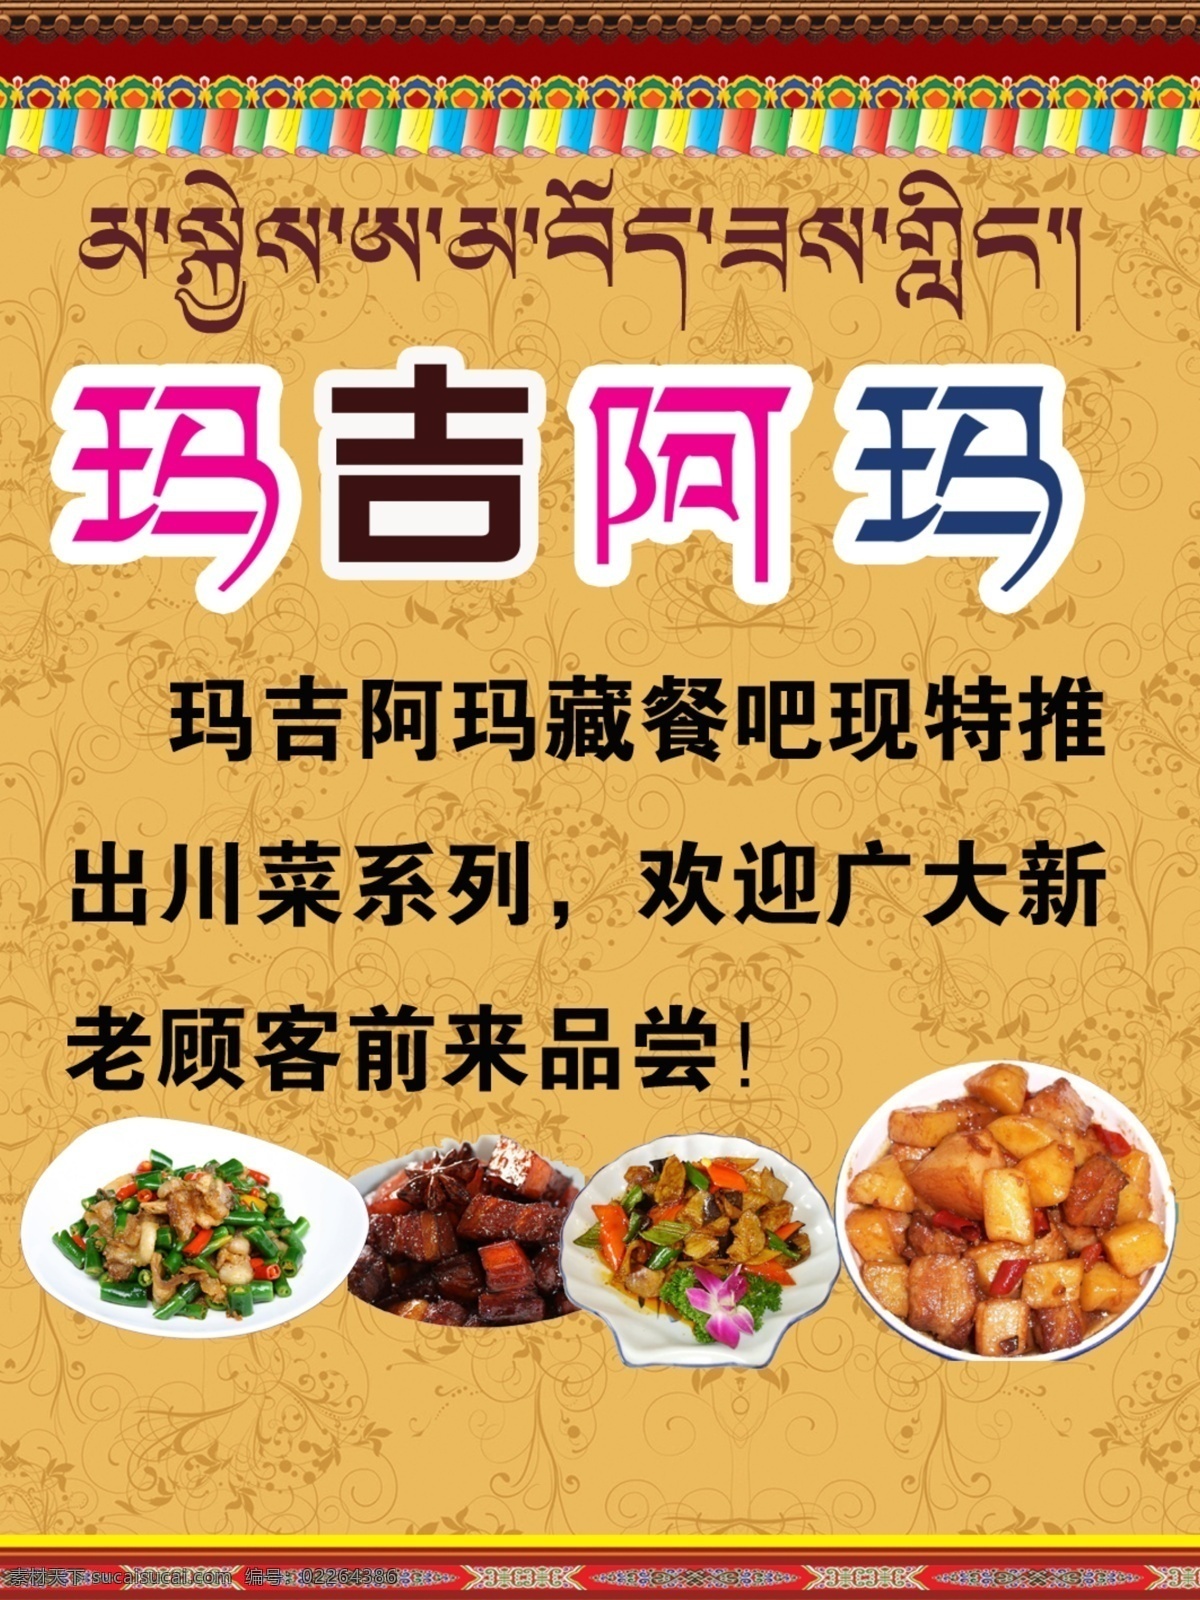 藏式 藏族 藏文 玛吉阿玛 藏式菜单 川菜系列